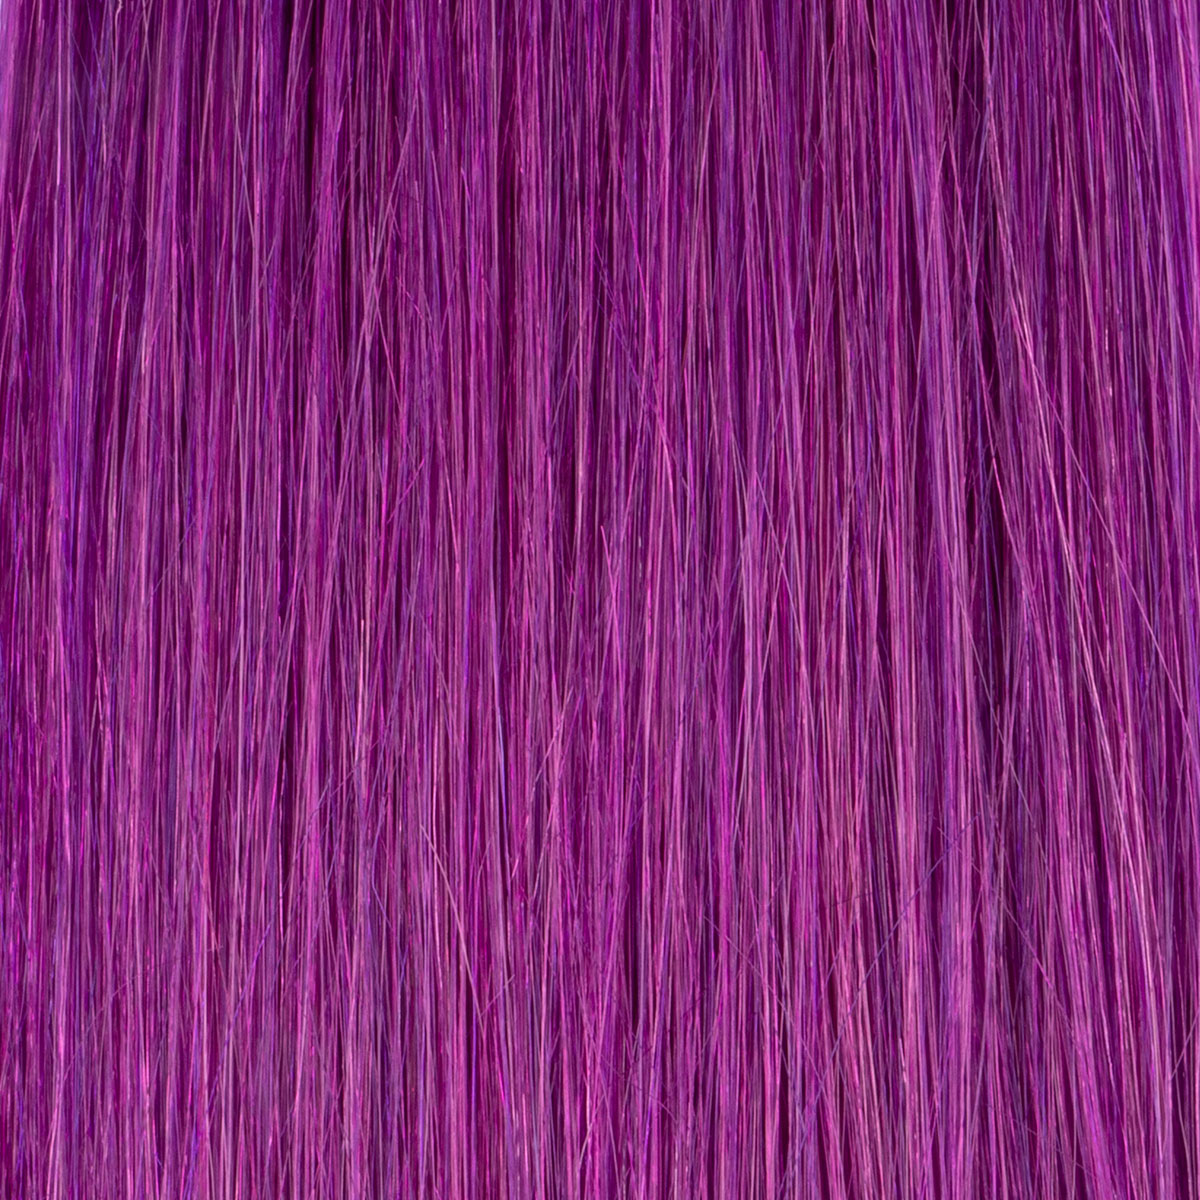 Crazy colors purple